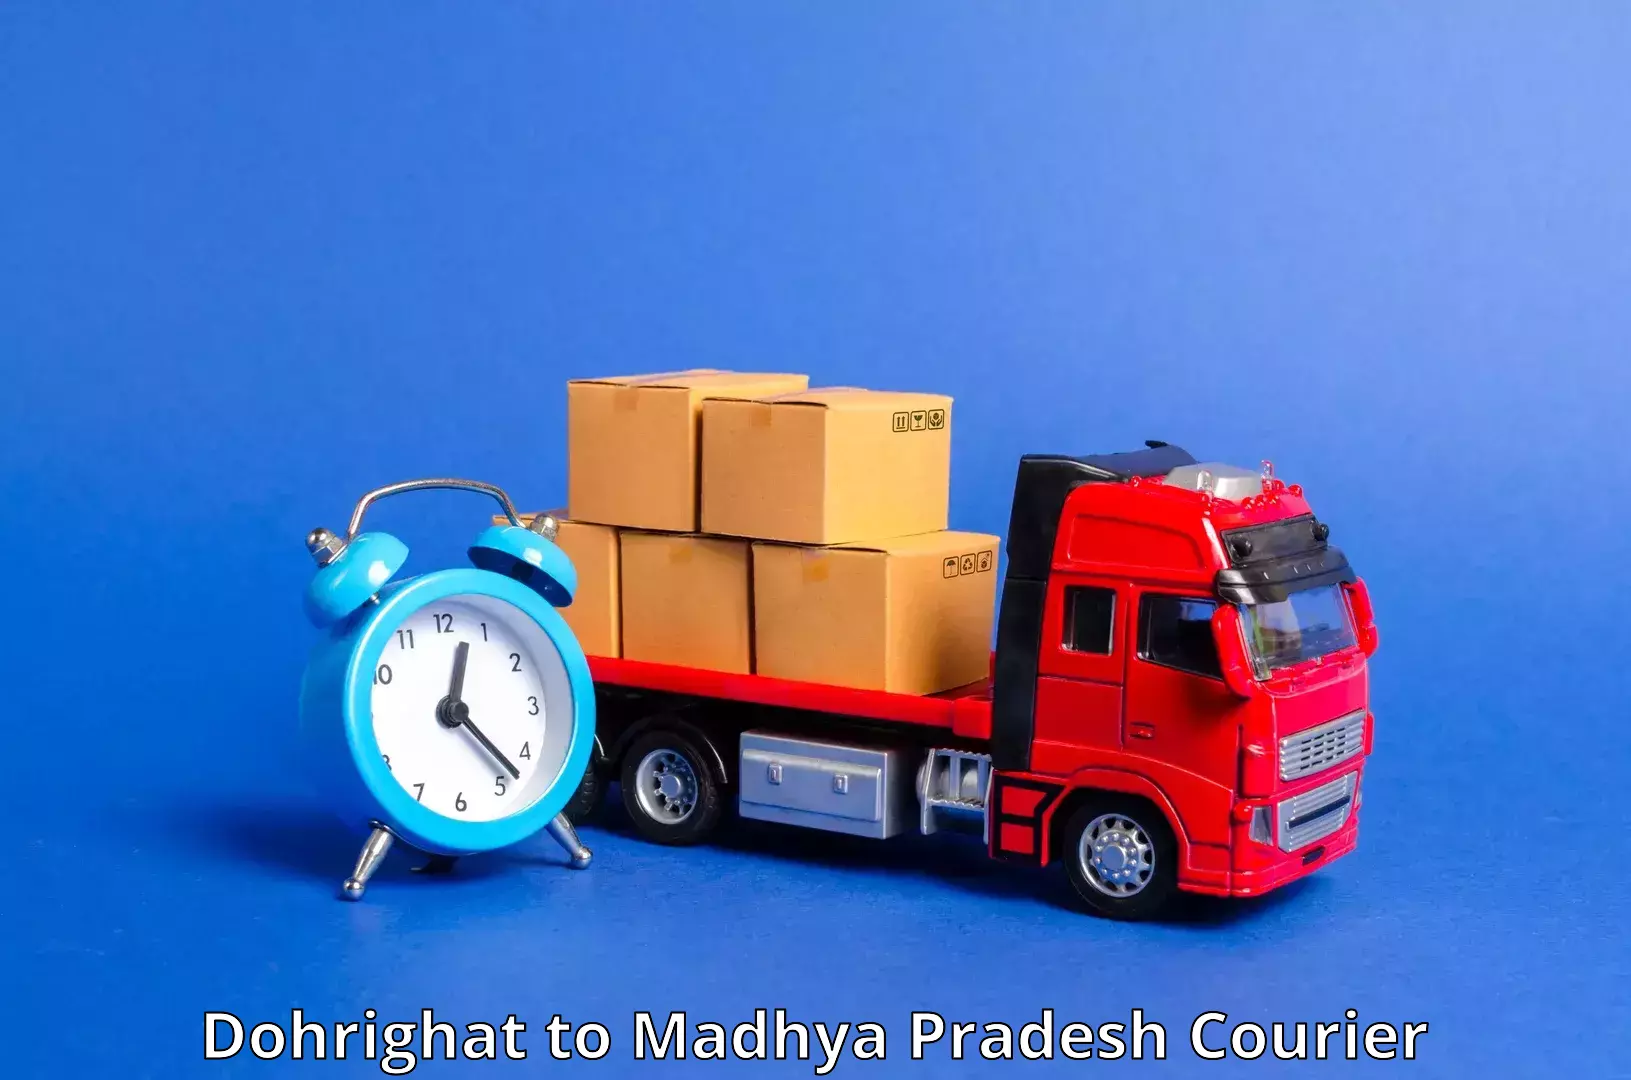 24/7 courier service Dohrighat to Badnagar